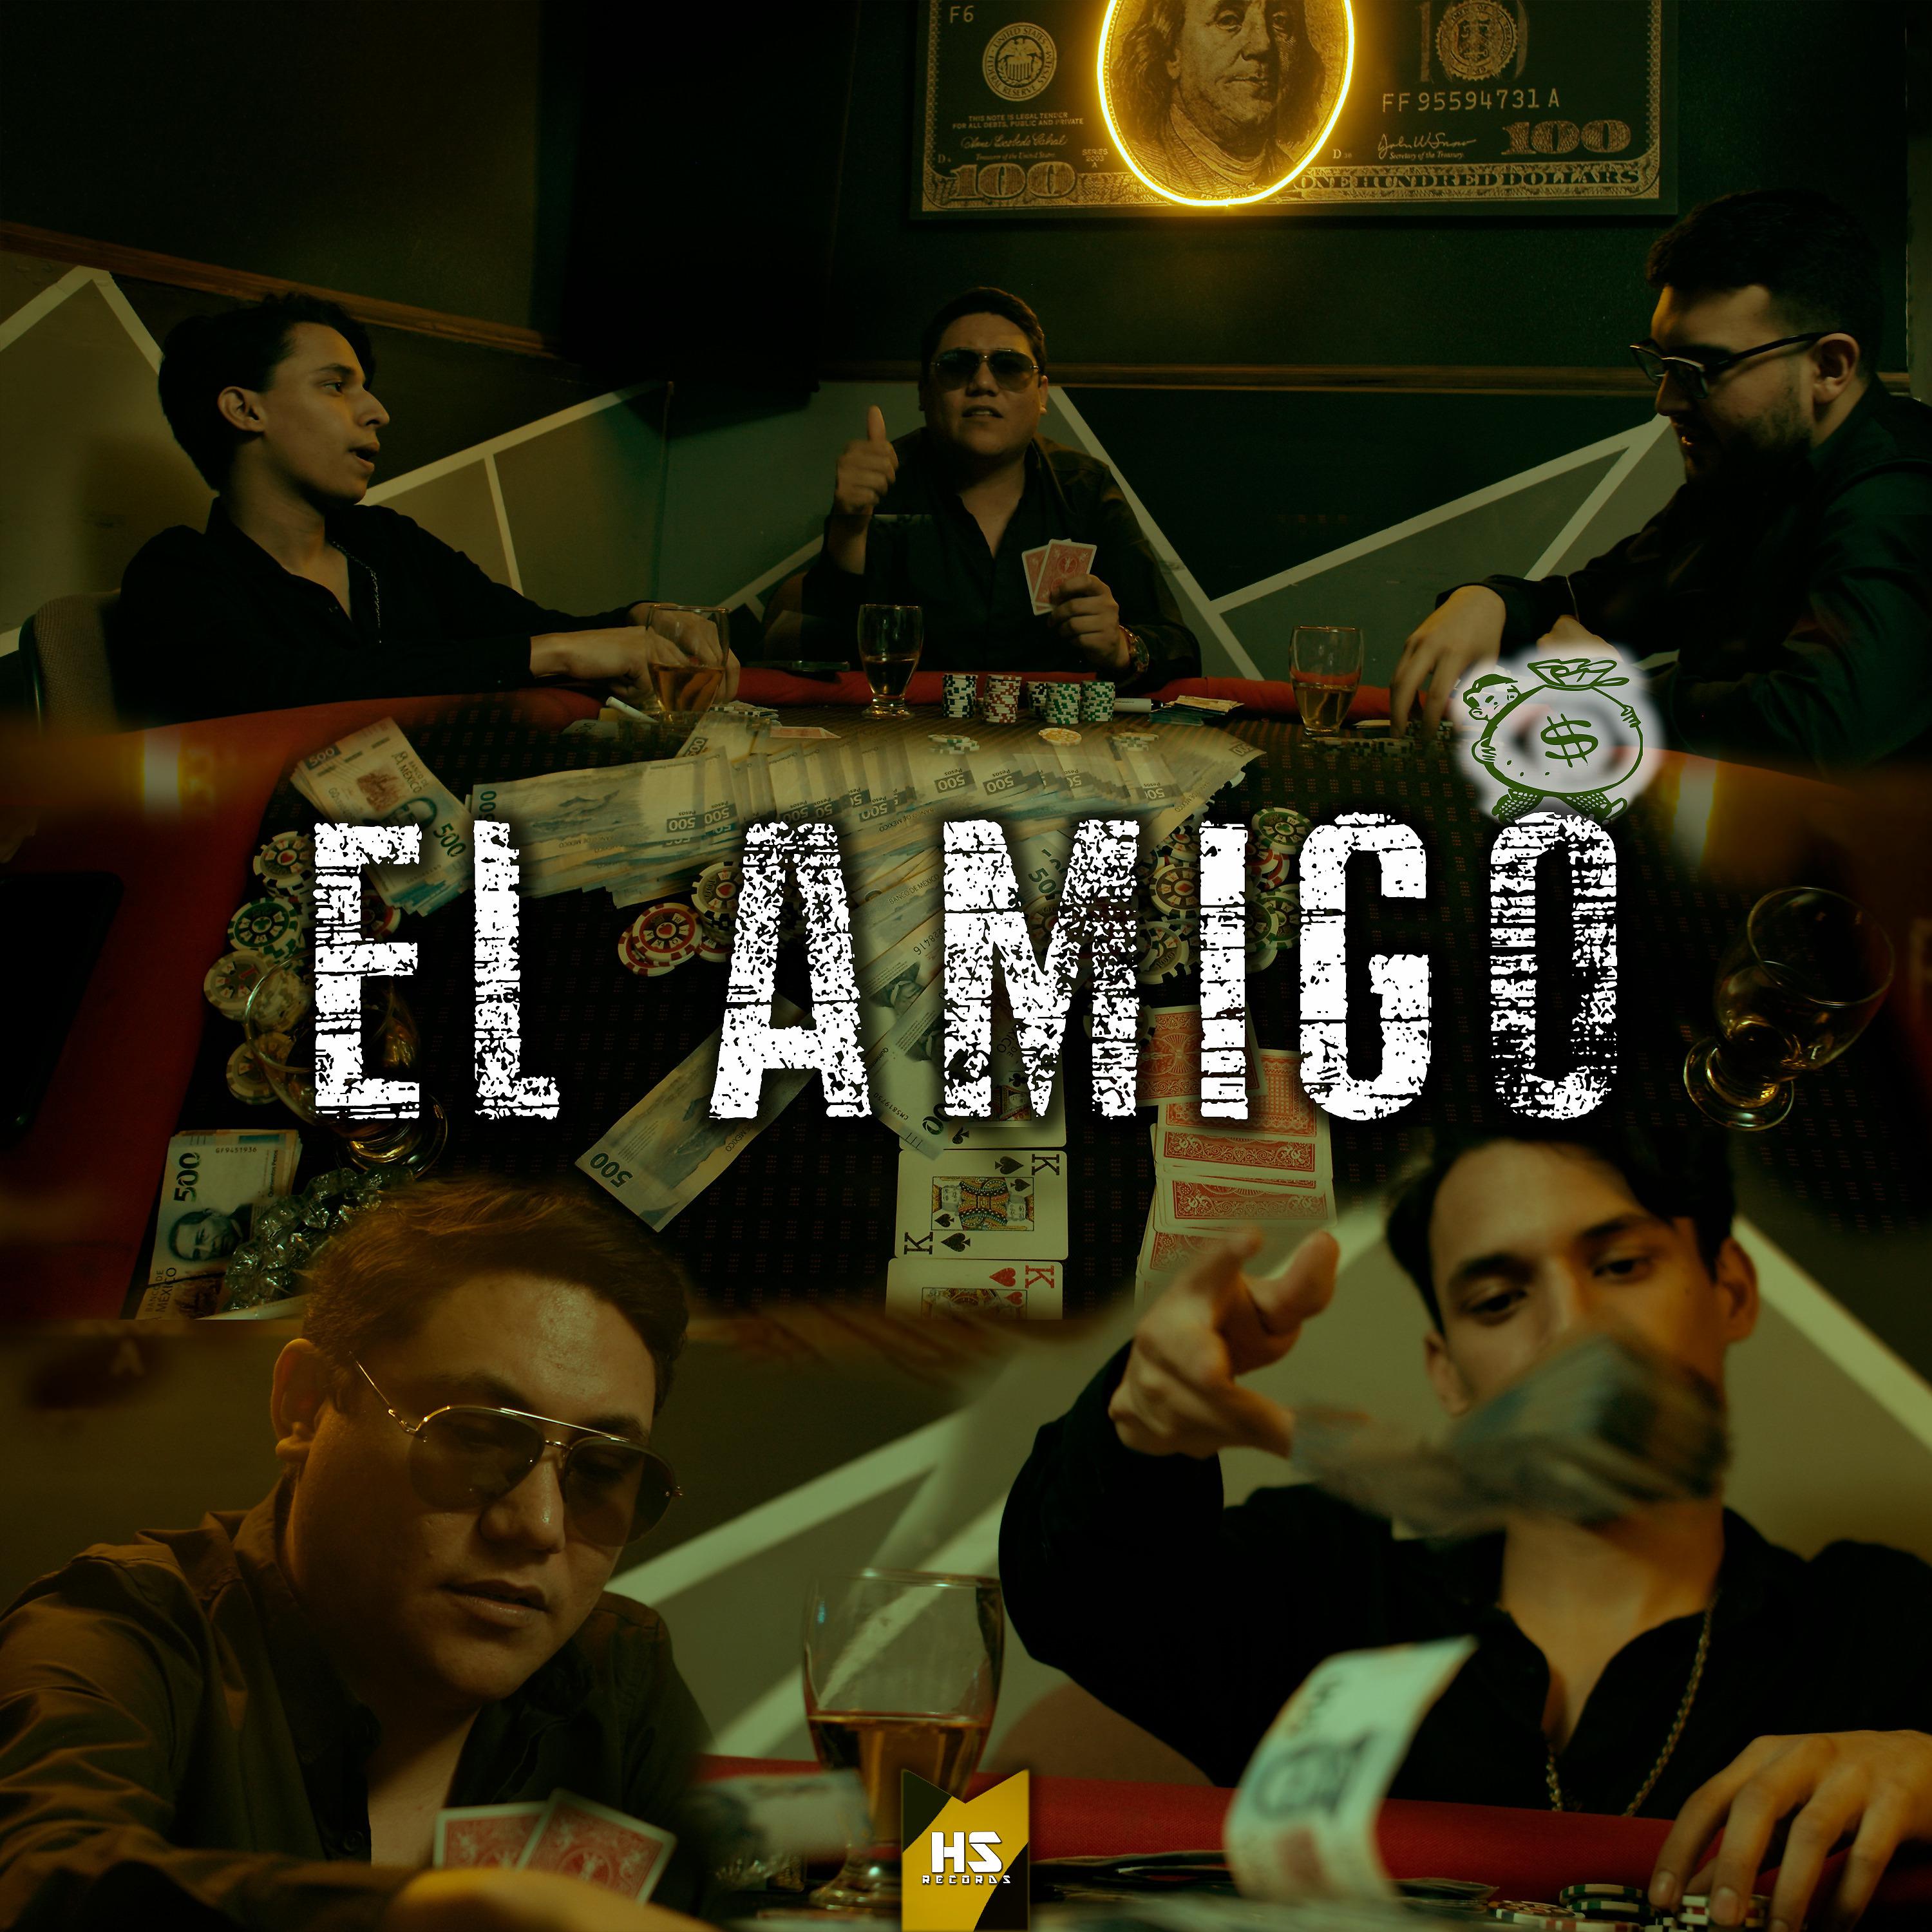 Постер альбома El Amigo